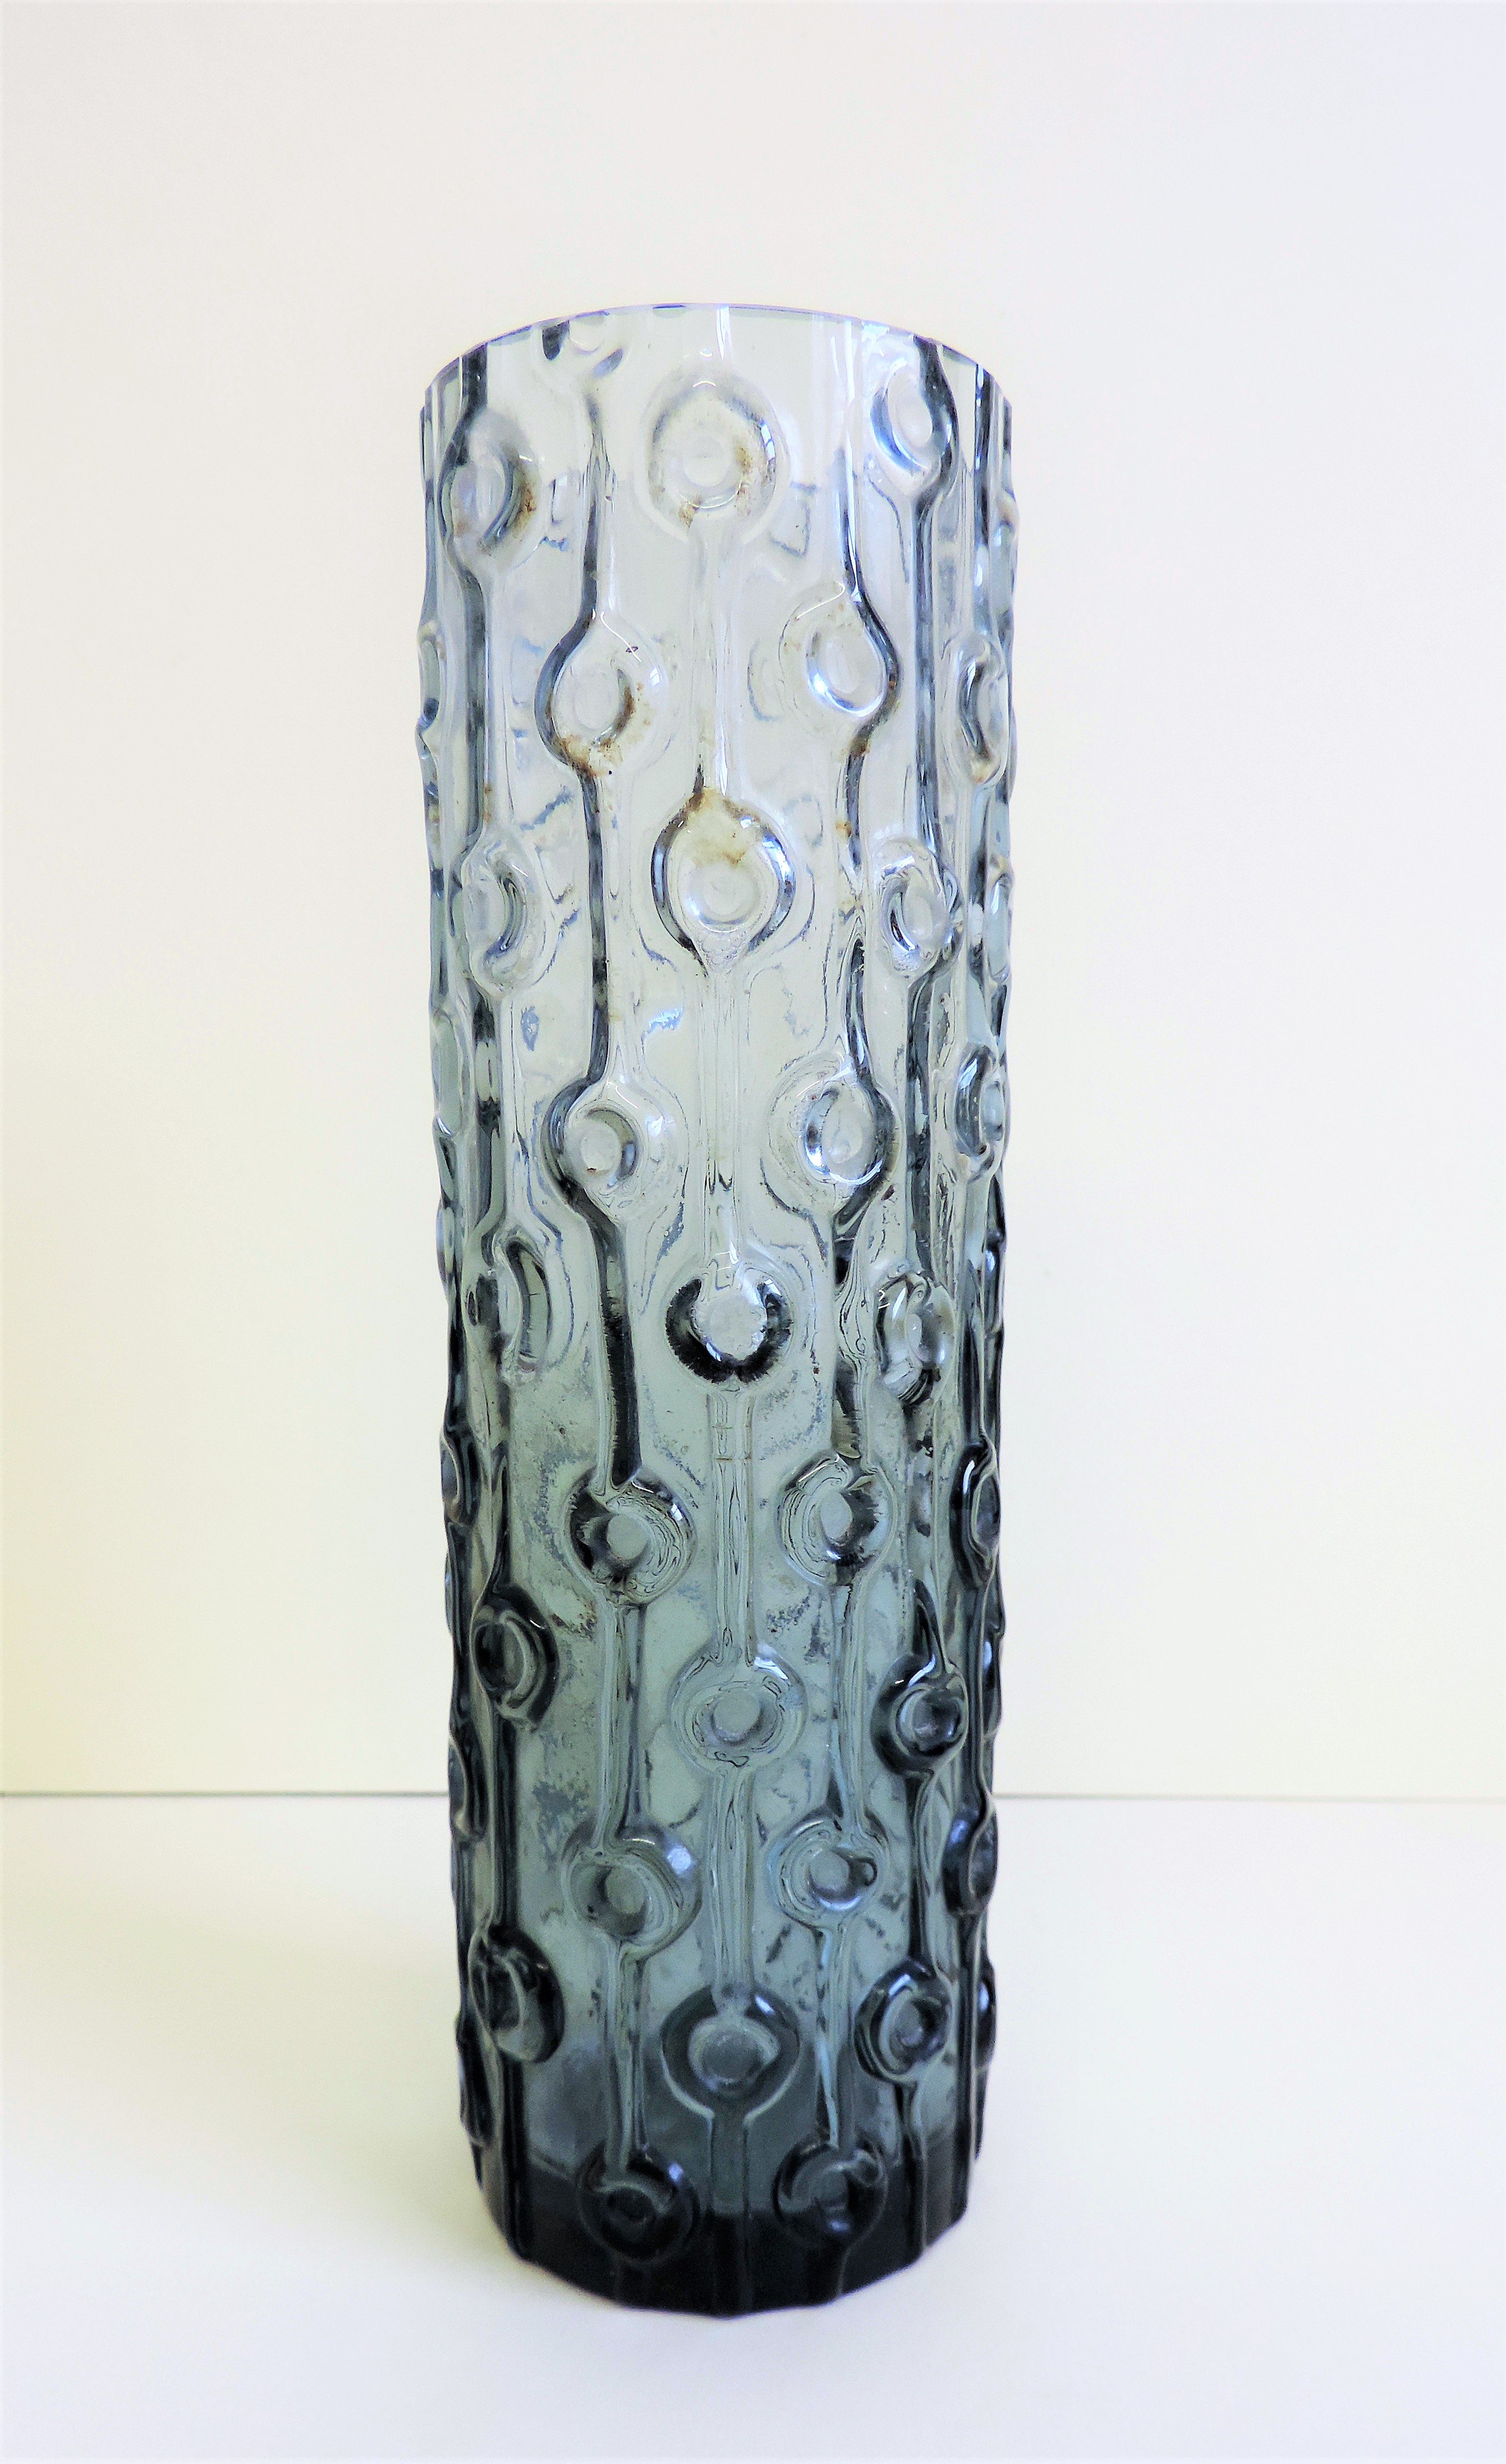 Vintage Art Glass Vase - Image 3 of 3